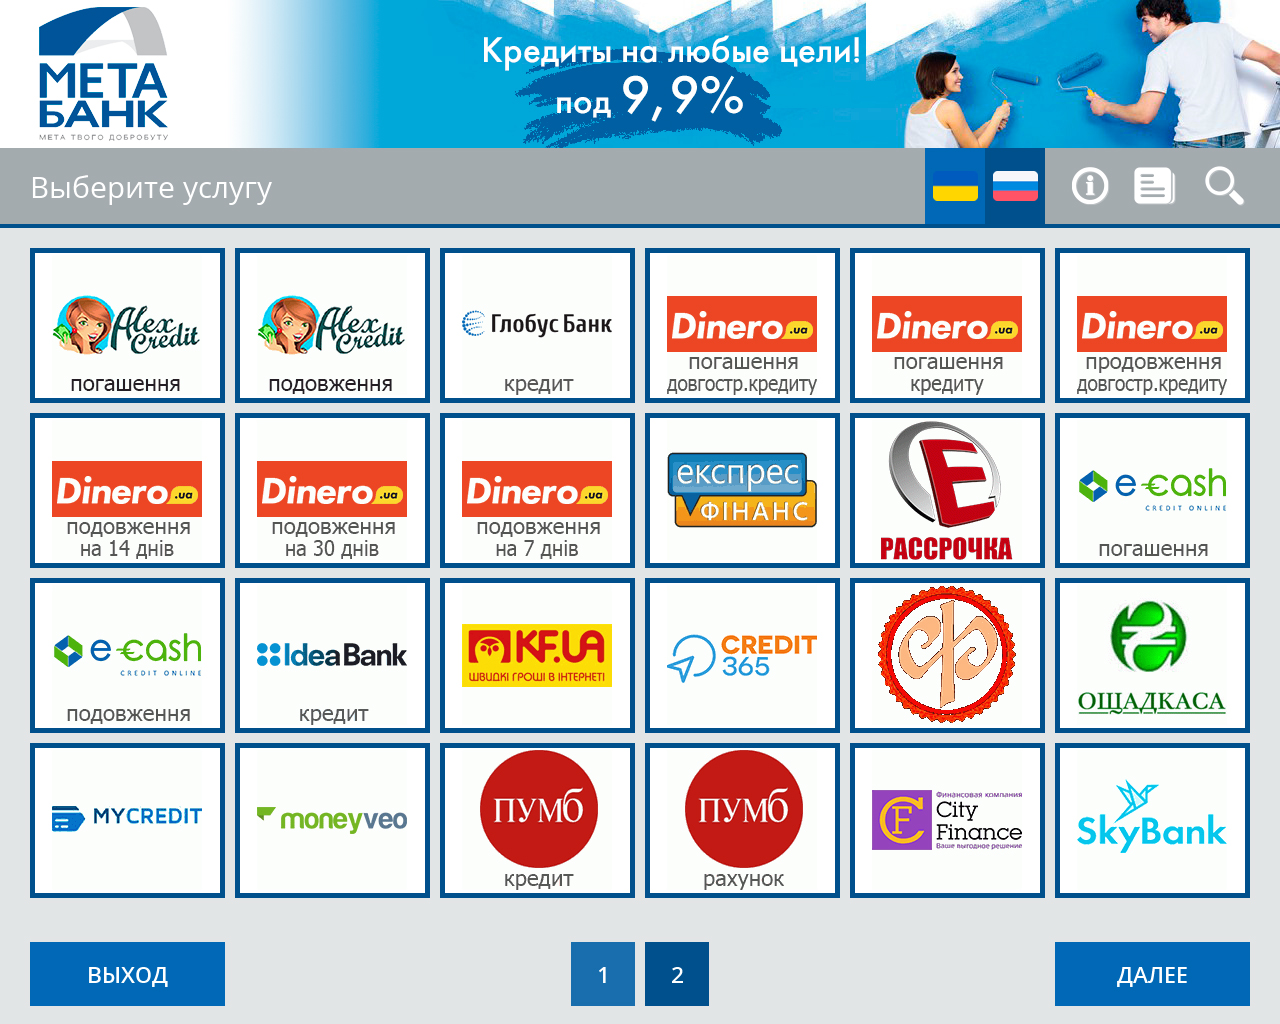 МетаБанк (Украина) автоматизирует прием платежей через сеть терминалов - рис.5